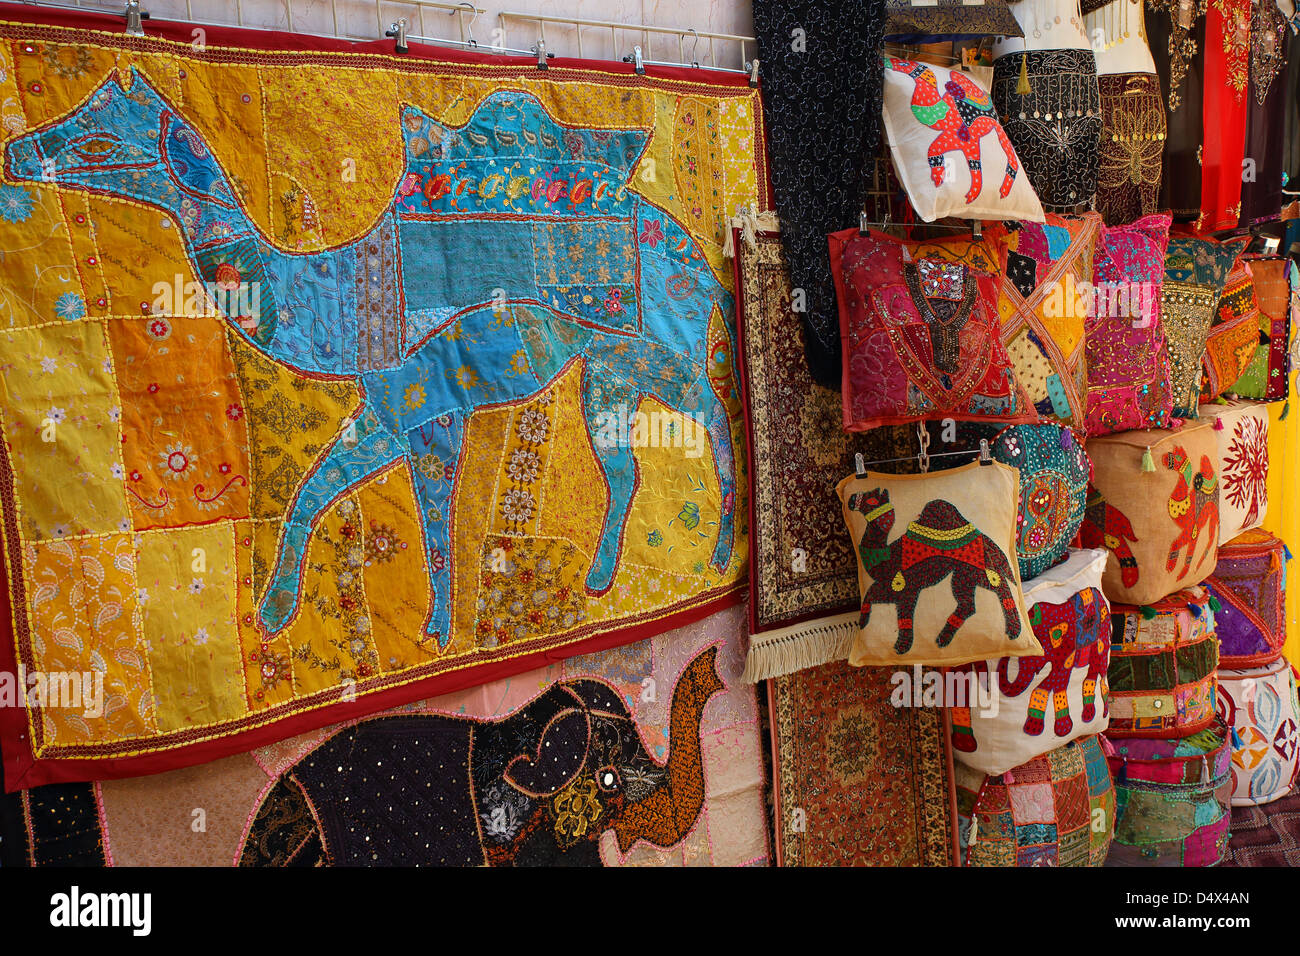 Farbenfrohe Textilien auf dem Display am Markt in Dubai, Vereinigte Arabische Emirate Stockfoto